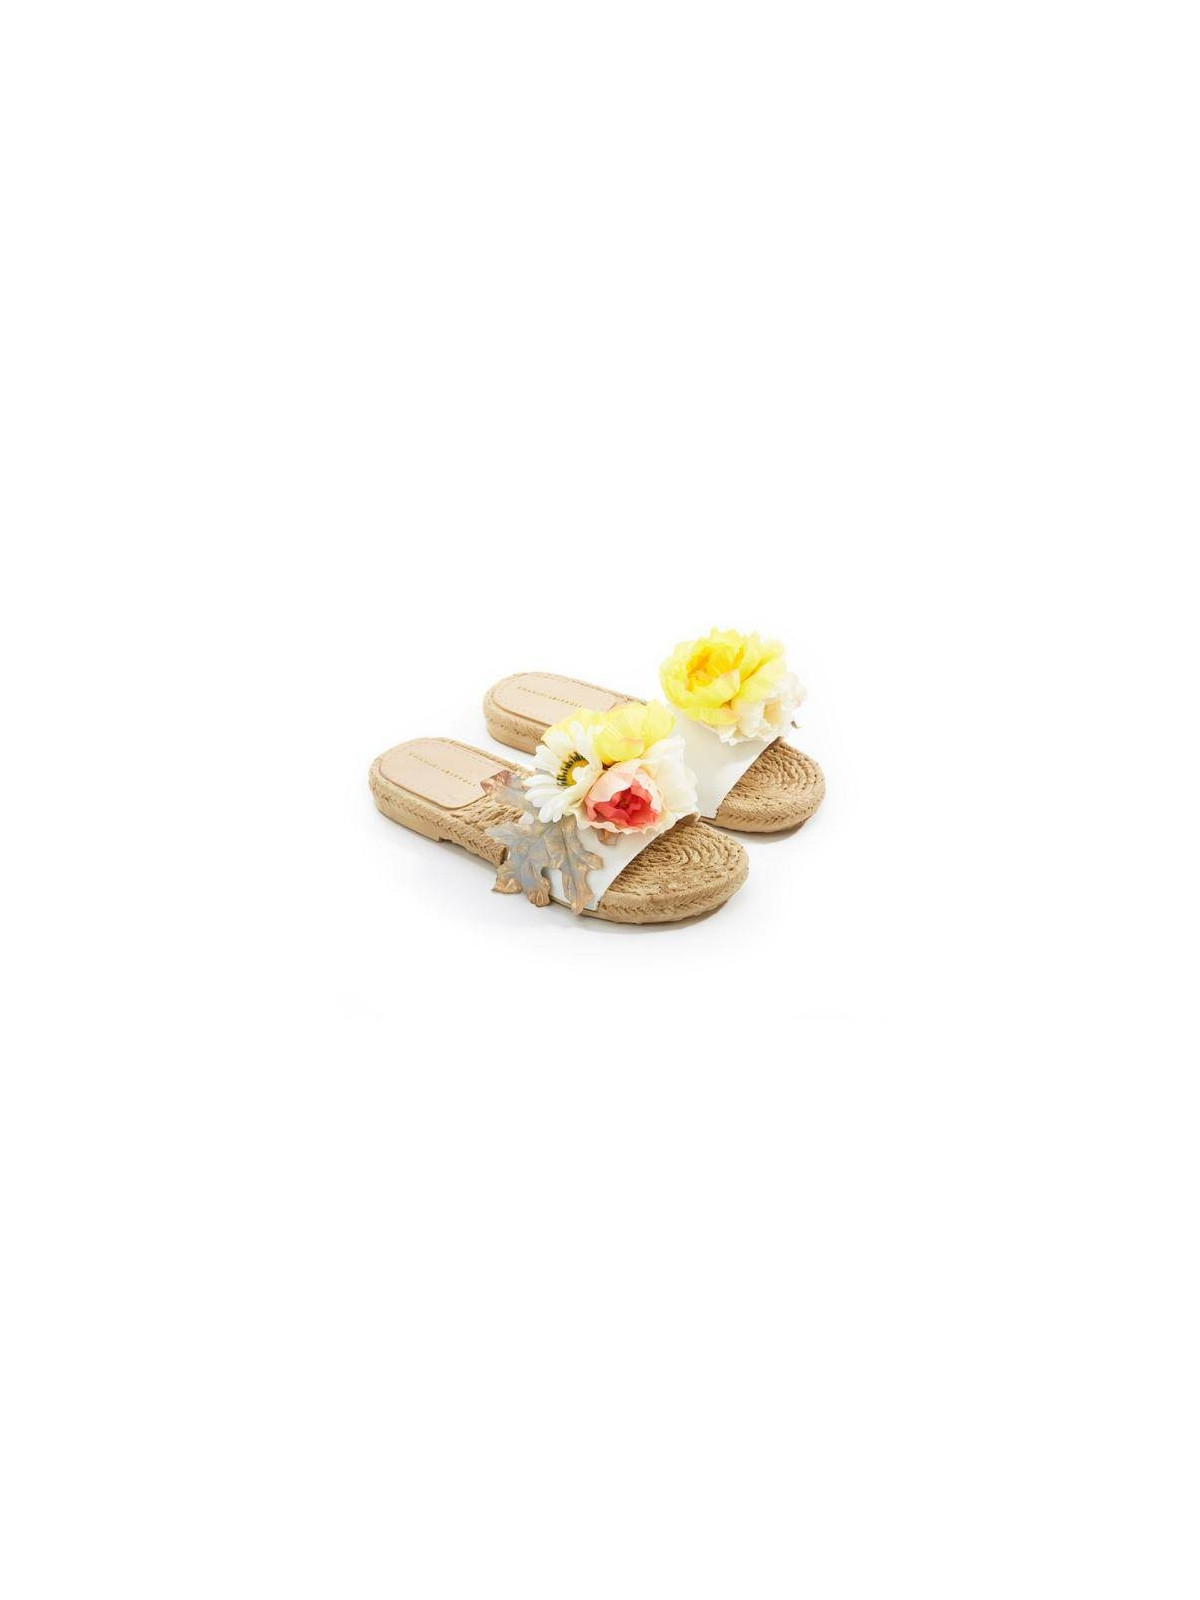 Biffoli Ciabatta in PVC con fiore giallo e foglia39,00 €